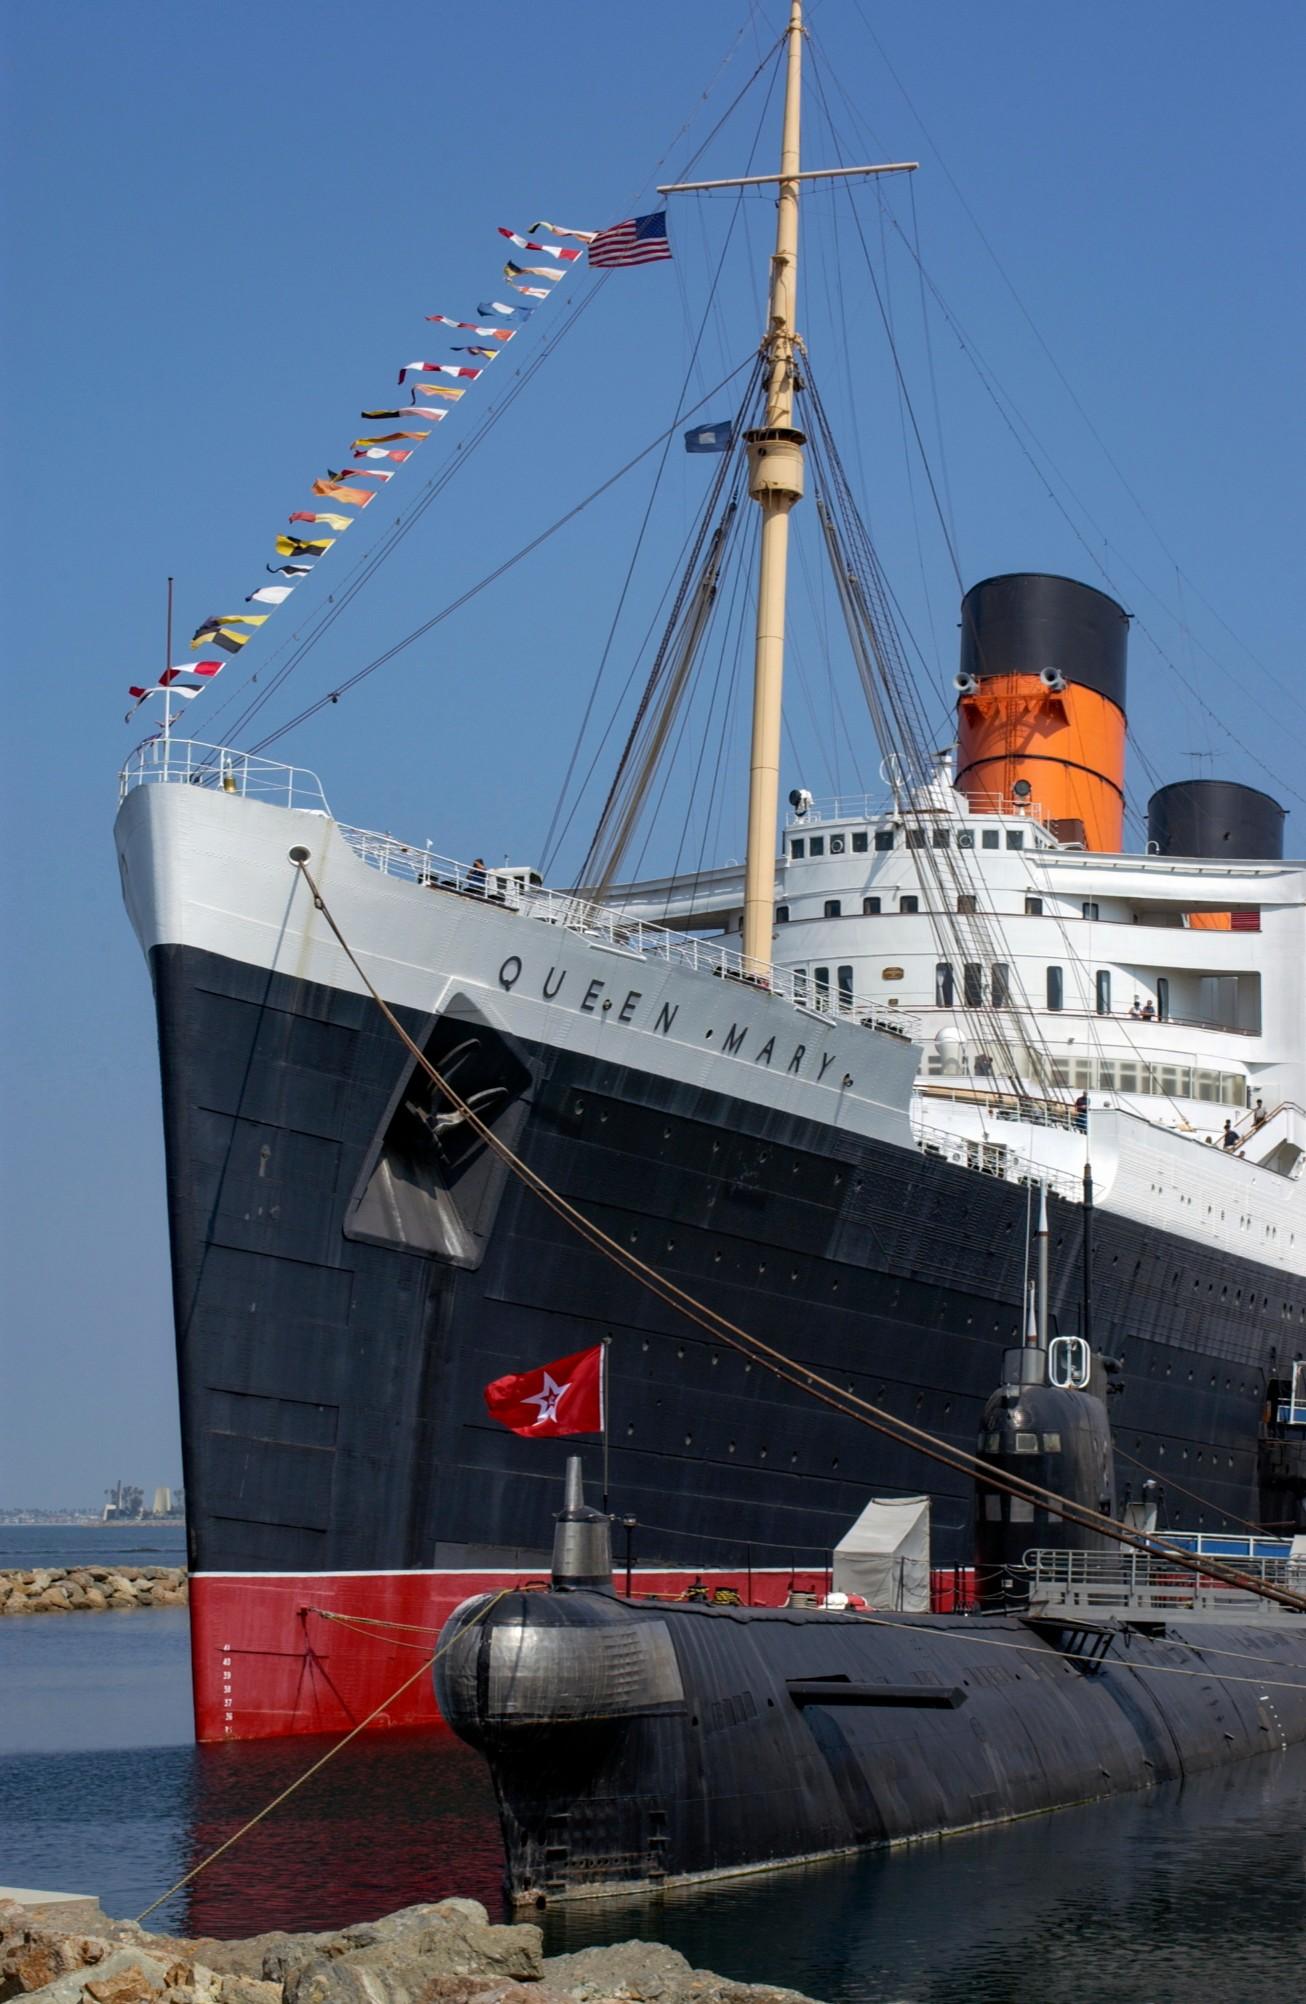 RMS玛丽女王,长滩”sizes=